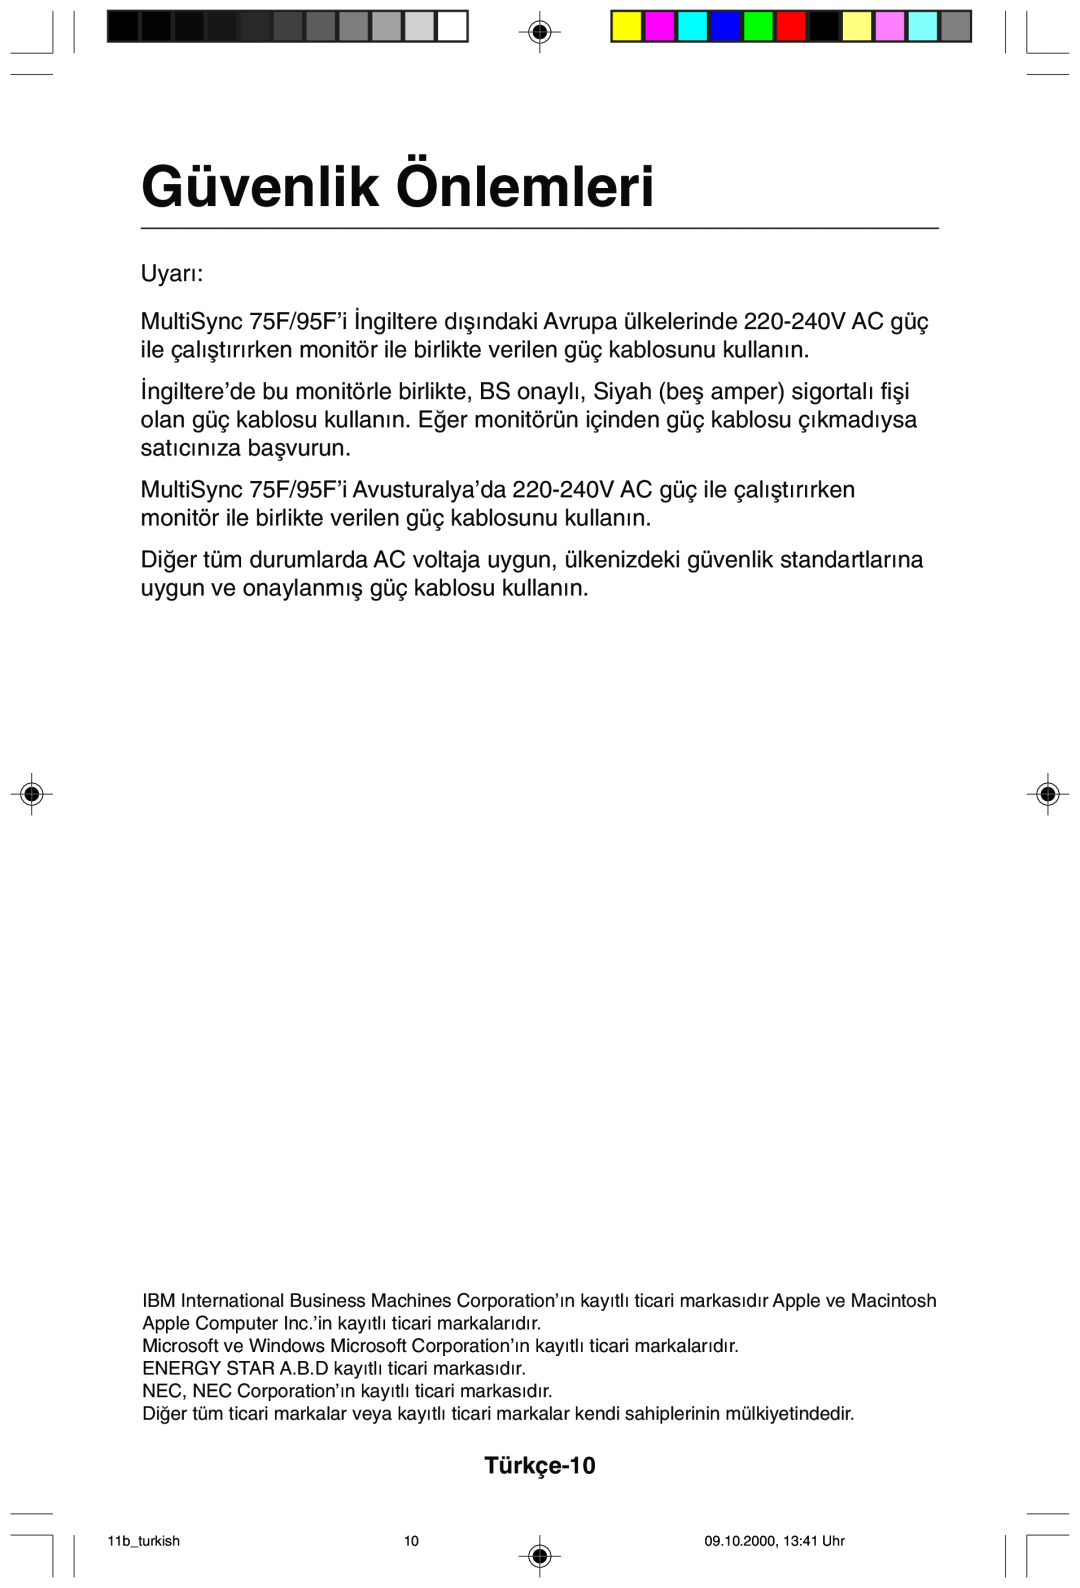 NEC 95F user manual Güvenlik Önlemleri, Türkçe-10 